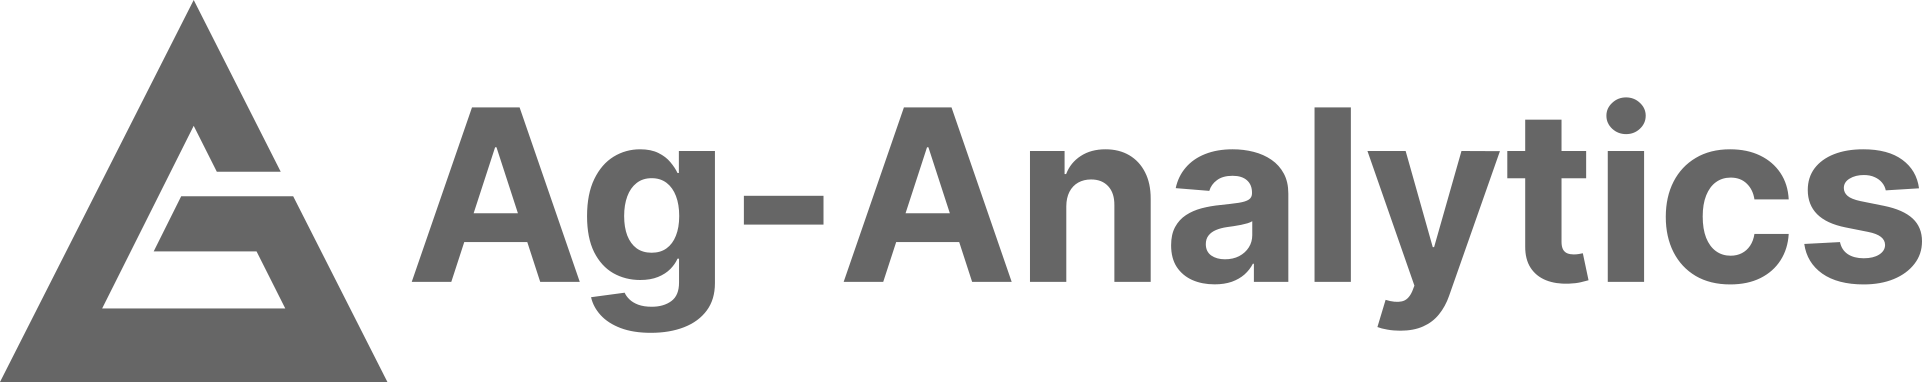 Ag-Analytics Logo